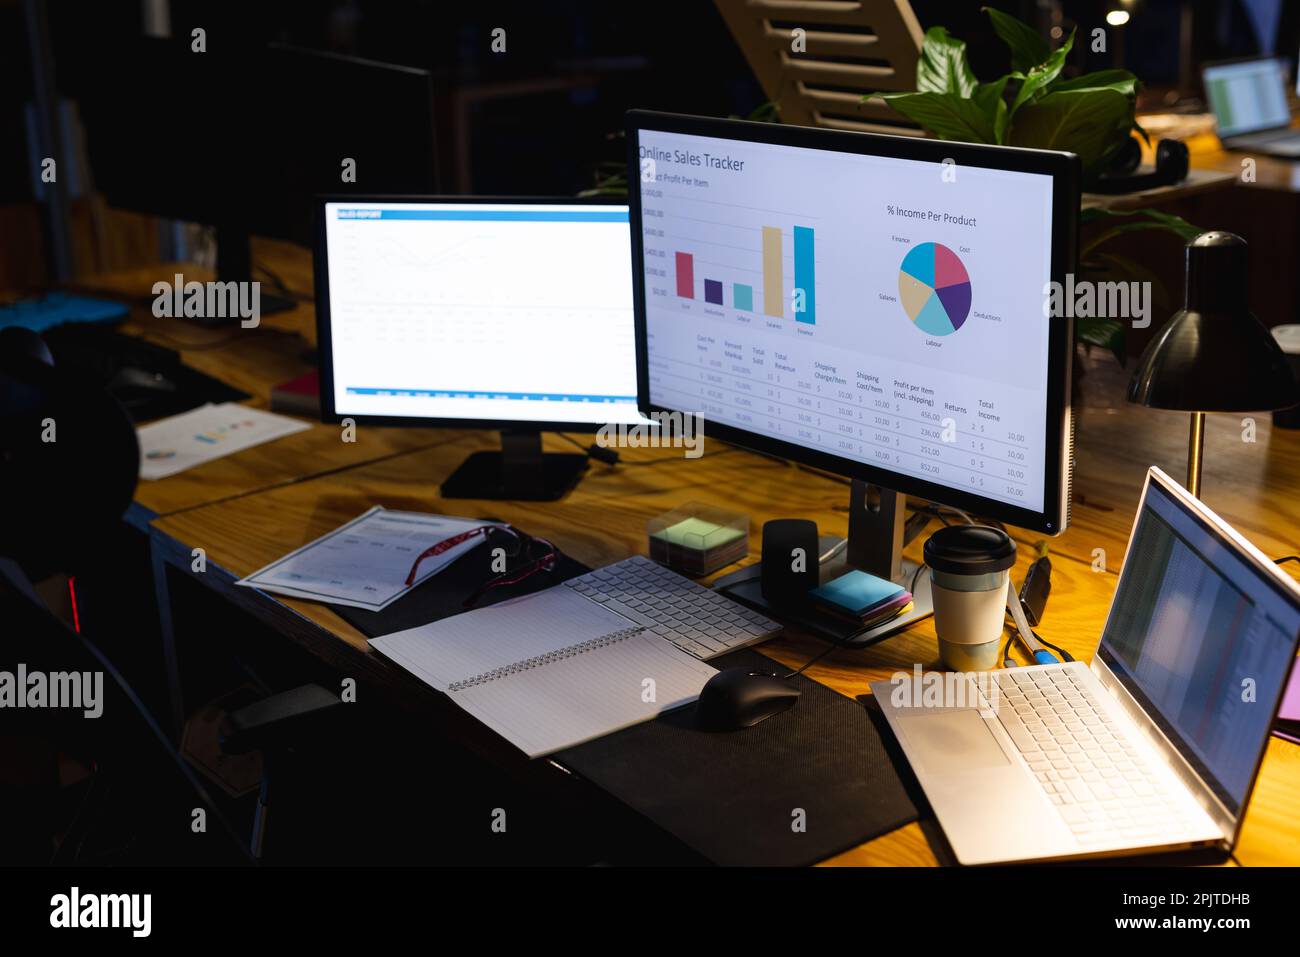 Nahaufnahme des Schreibtischs mit Laptop, Computern, Dokumenten und Notizbuch, die bis spät in die Nacht im Büro arbeiten Stockfoto